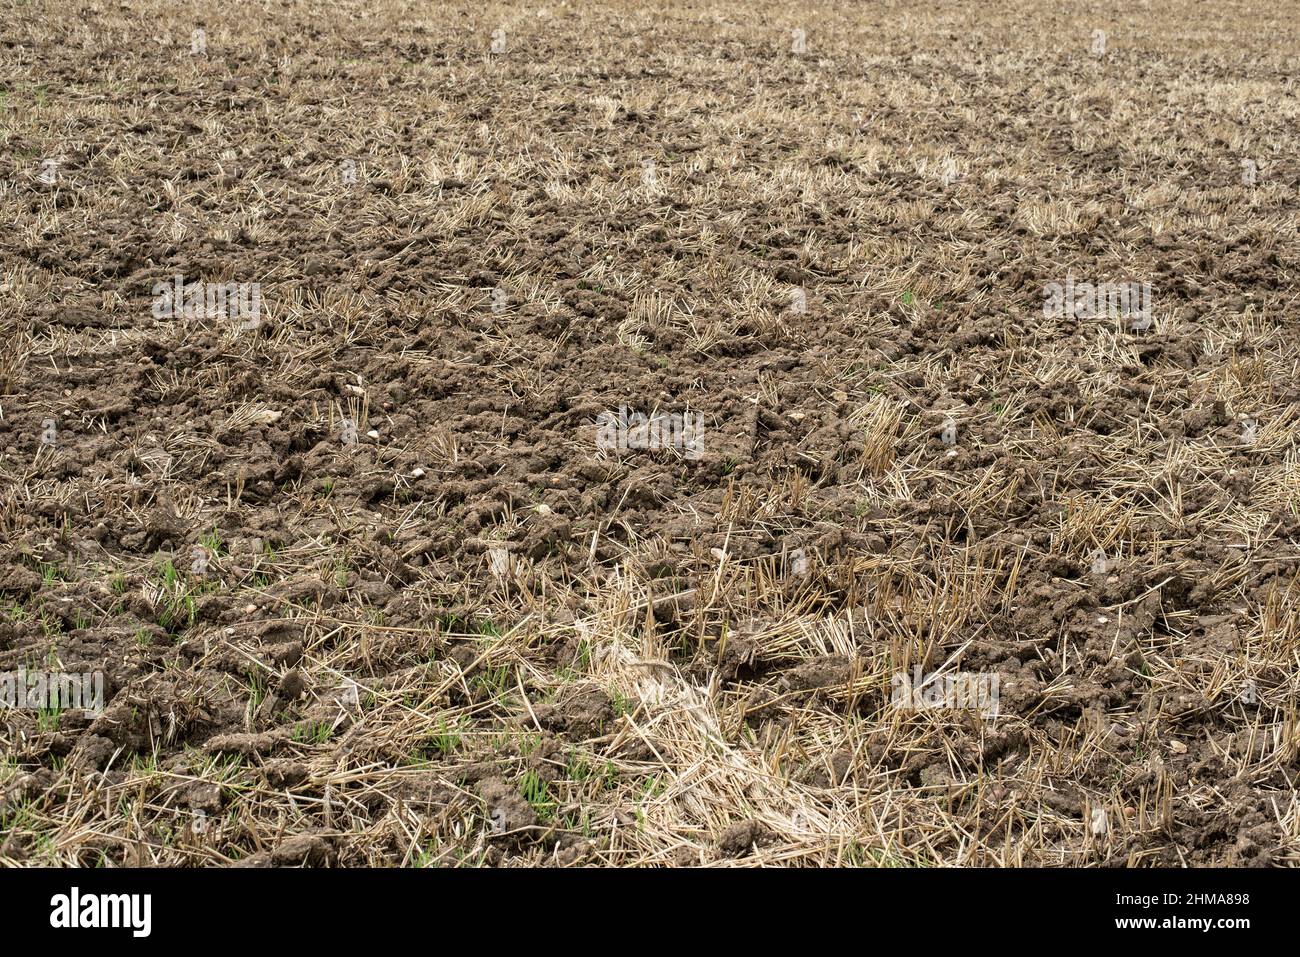 la tierra pedregosa de un campo de trigo cosechado con paja Foto de stock